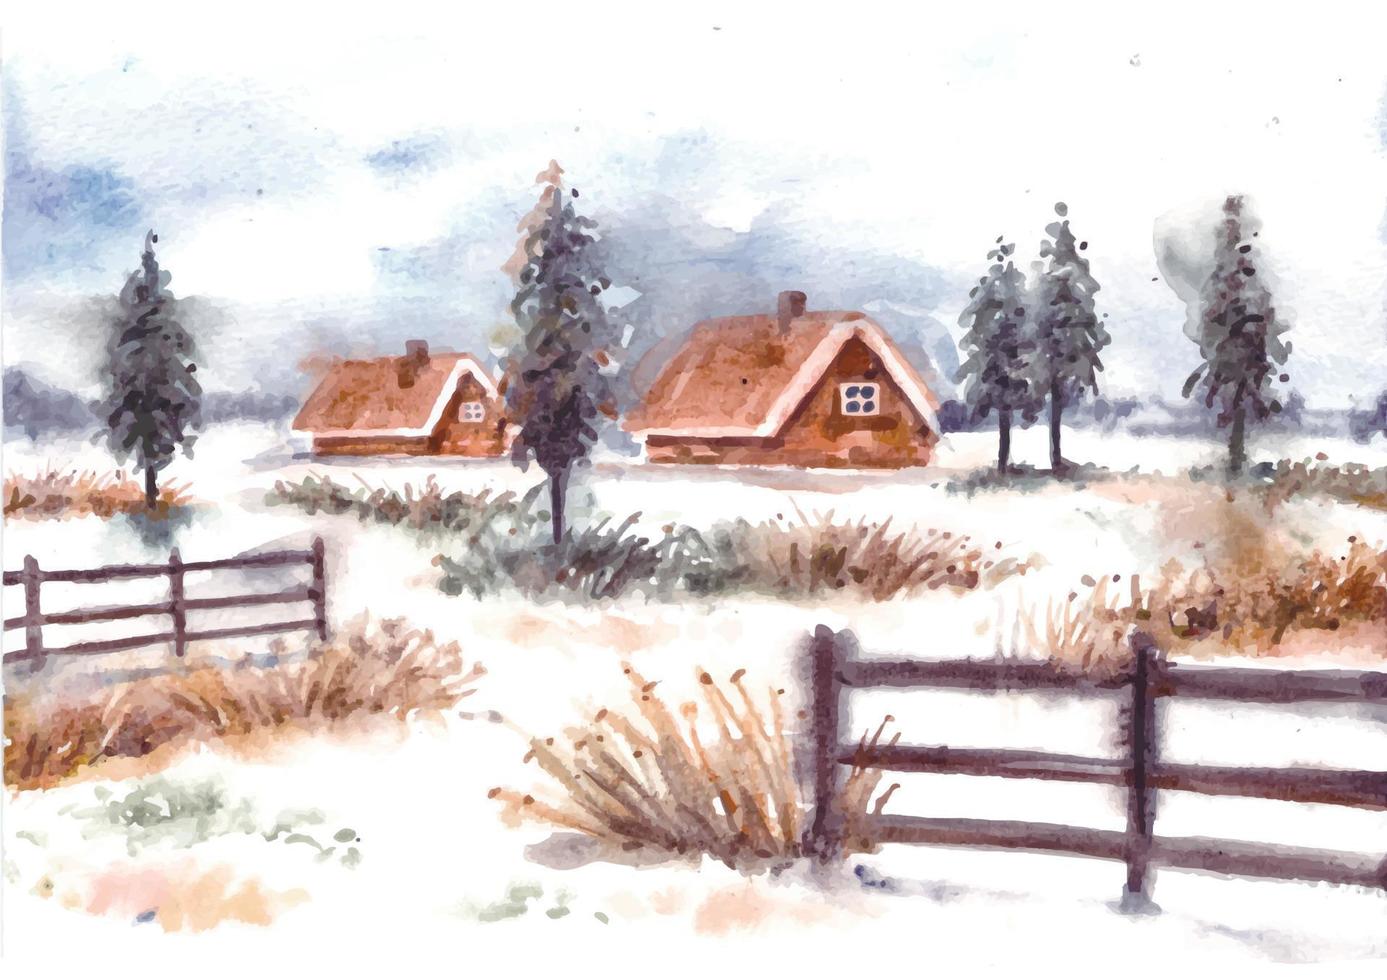 paysage d'hiver avec maison et pins aquarelle vecteur